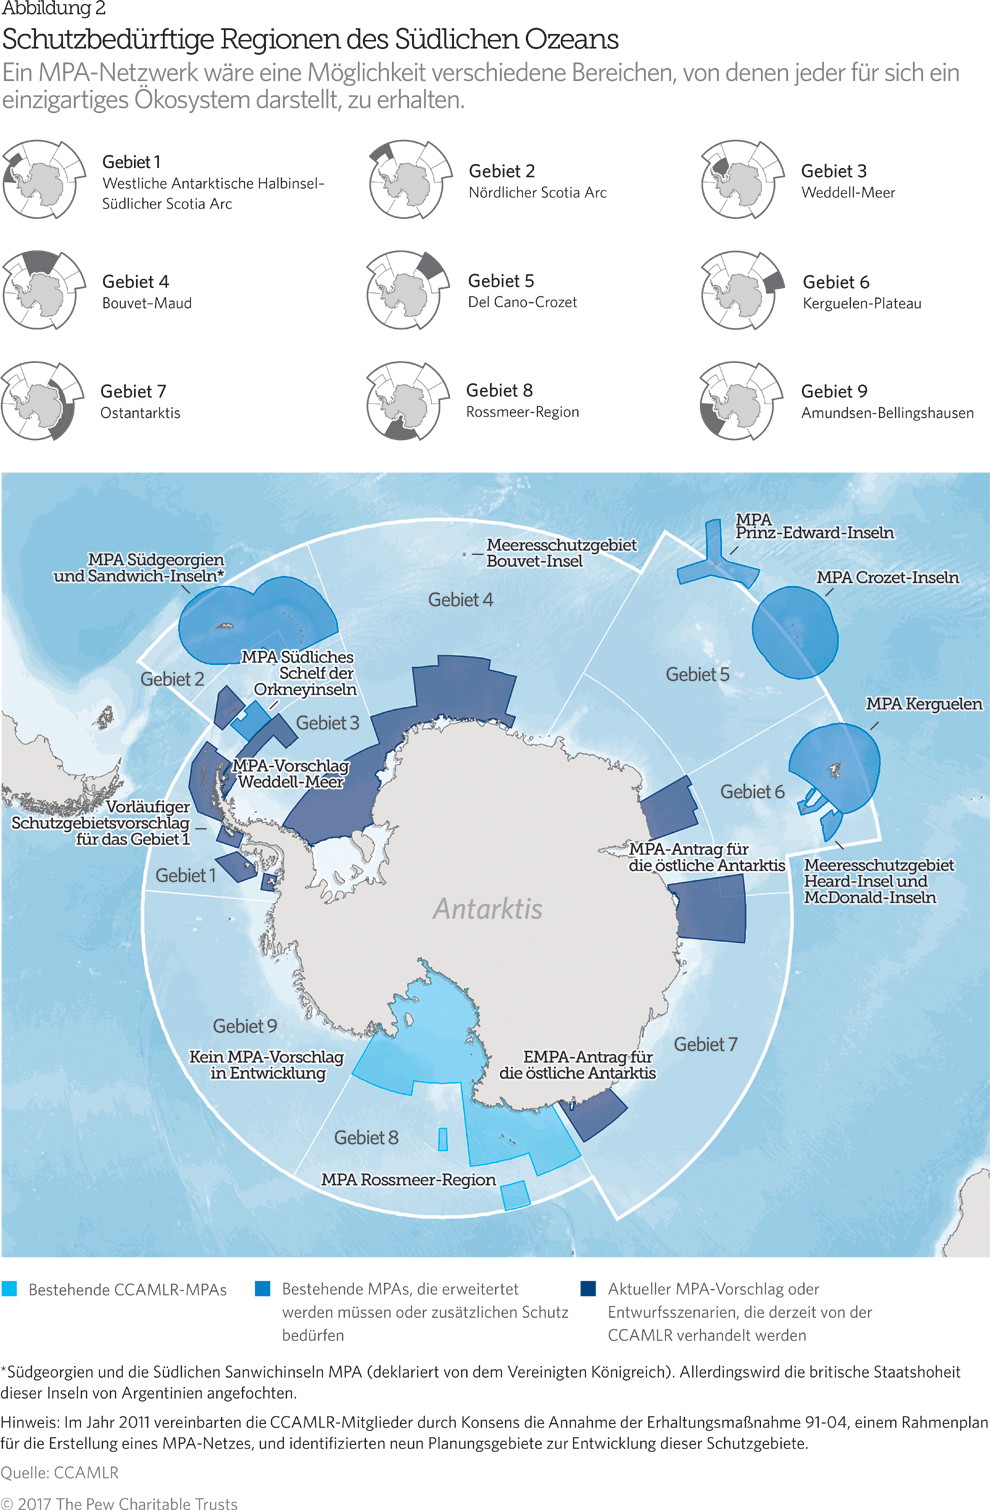 Ein Netzwerk von Meeresschutzgebieten im Südlichen Ozean | The Pew ...